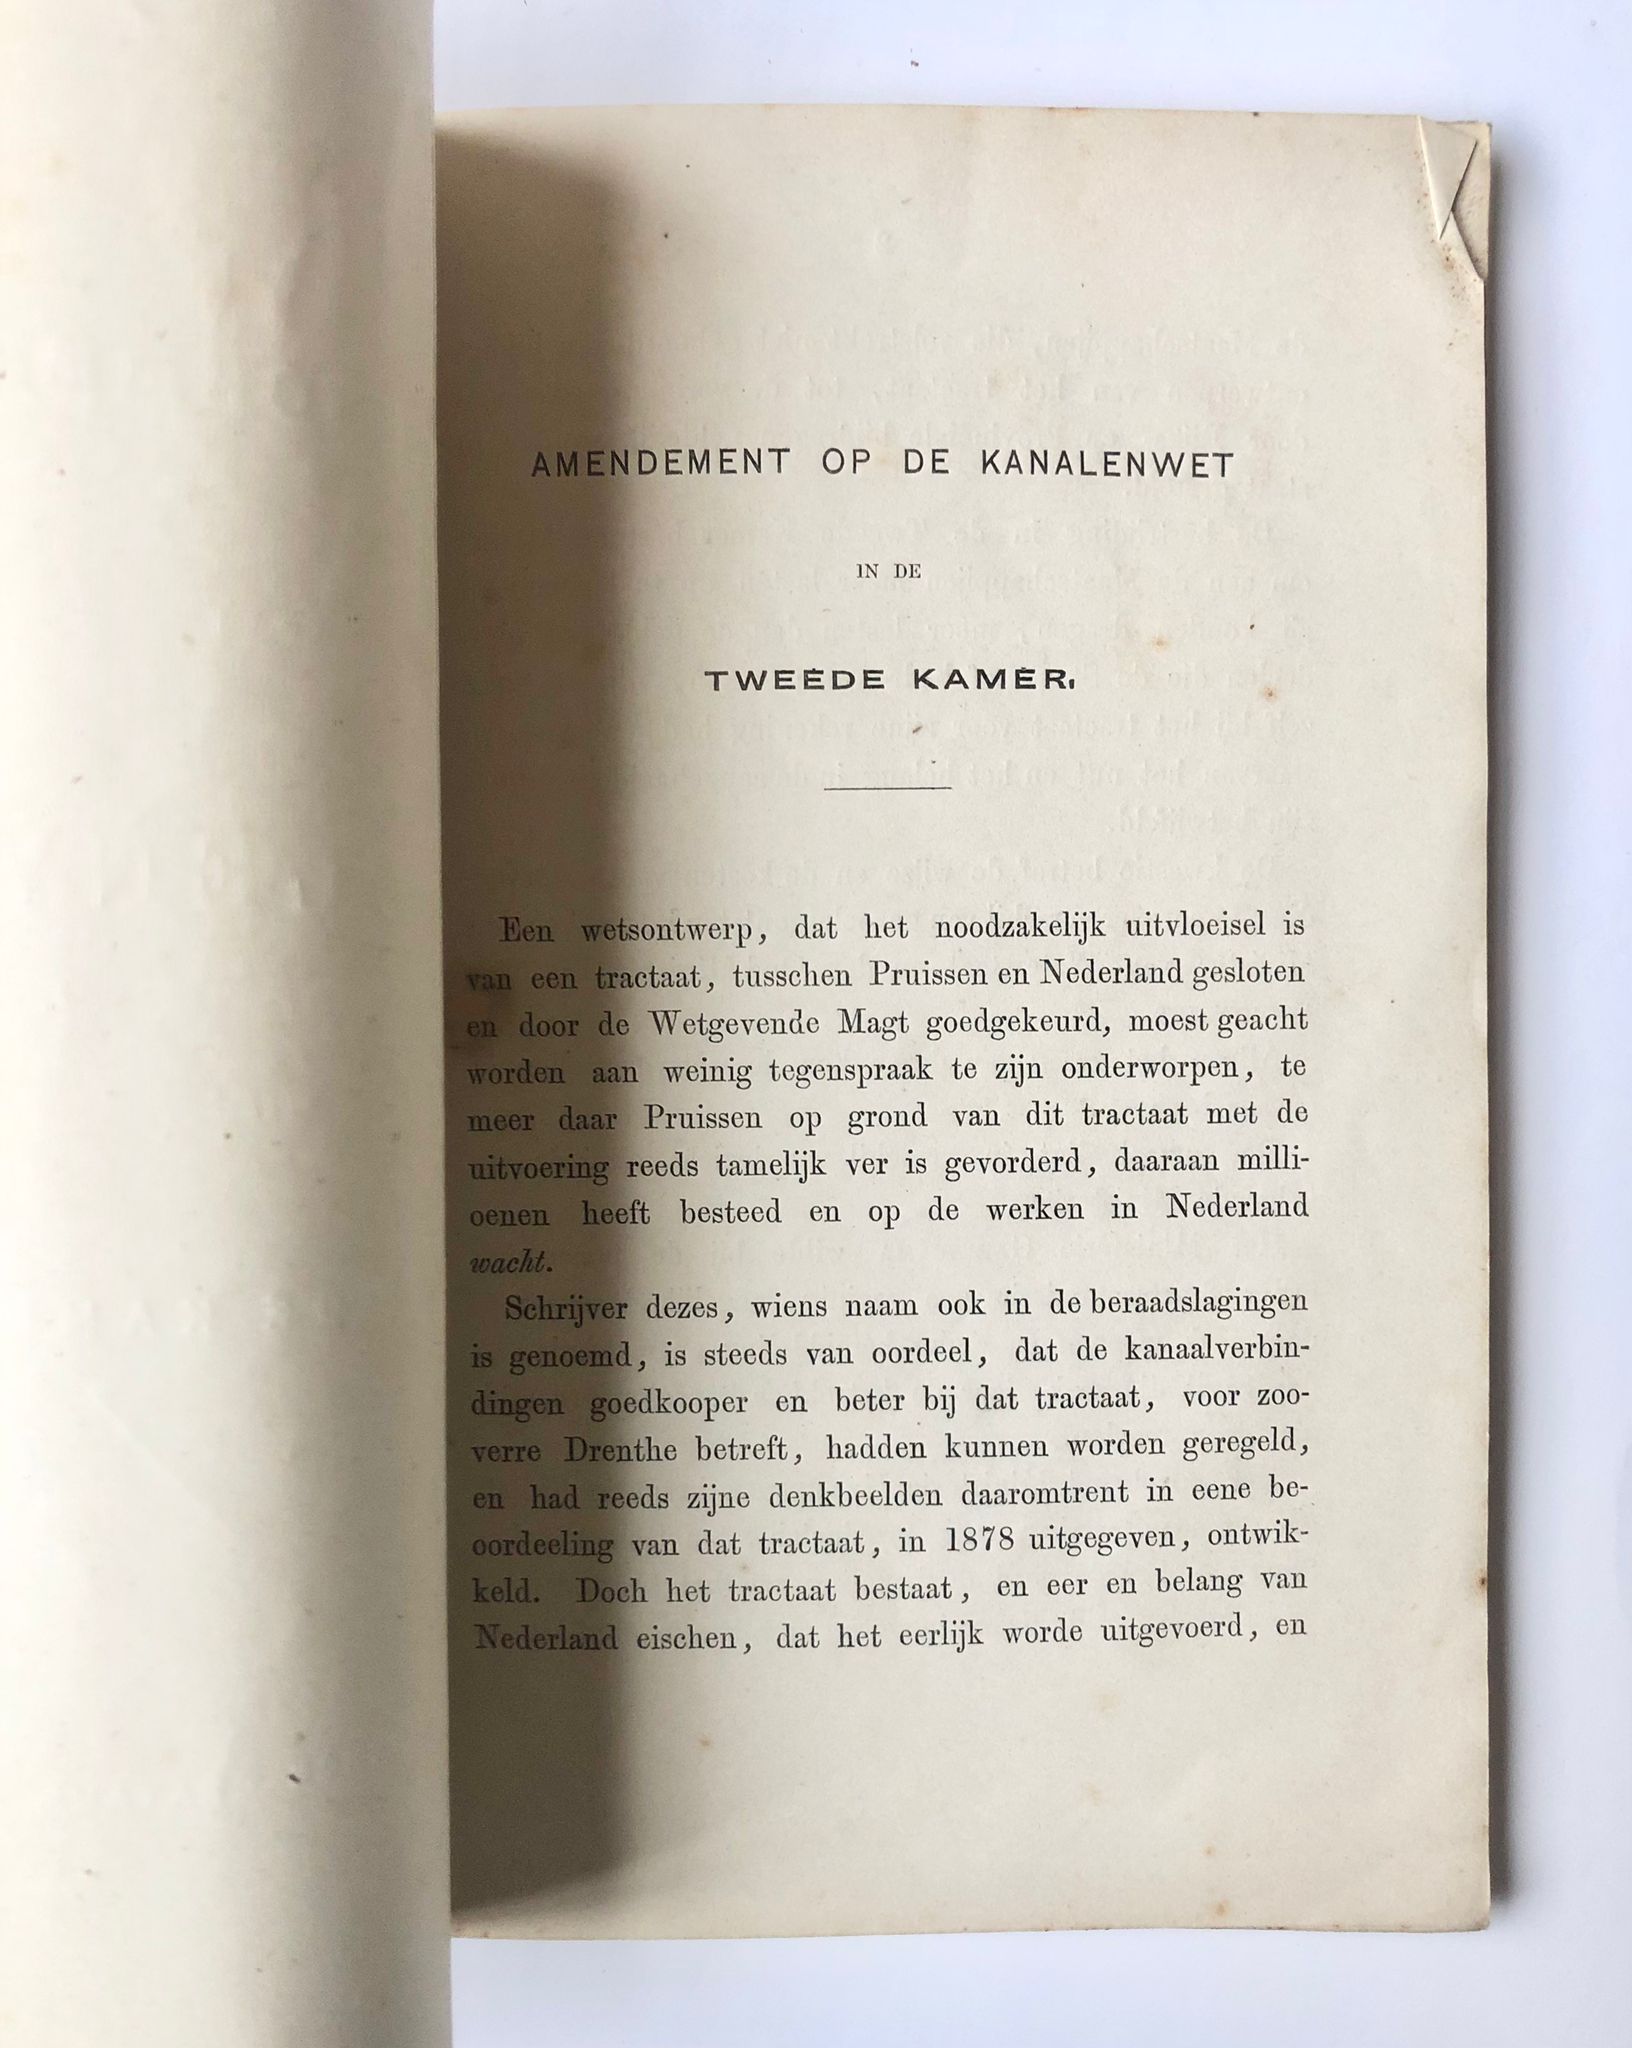 [Drenthe, 1880] Amendement op de kanalenwet in de Tweede Kamer, Willinge Gratama, Assen, 1880, 11 pp.